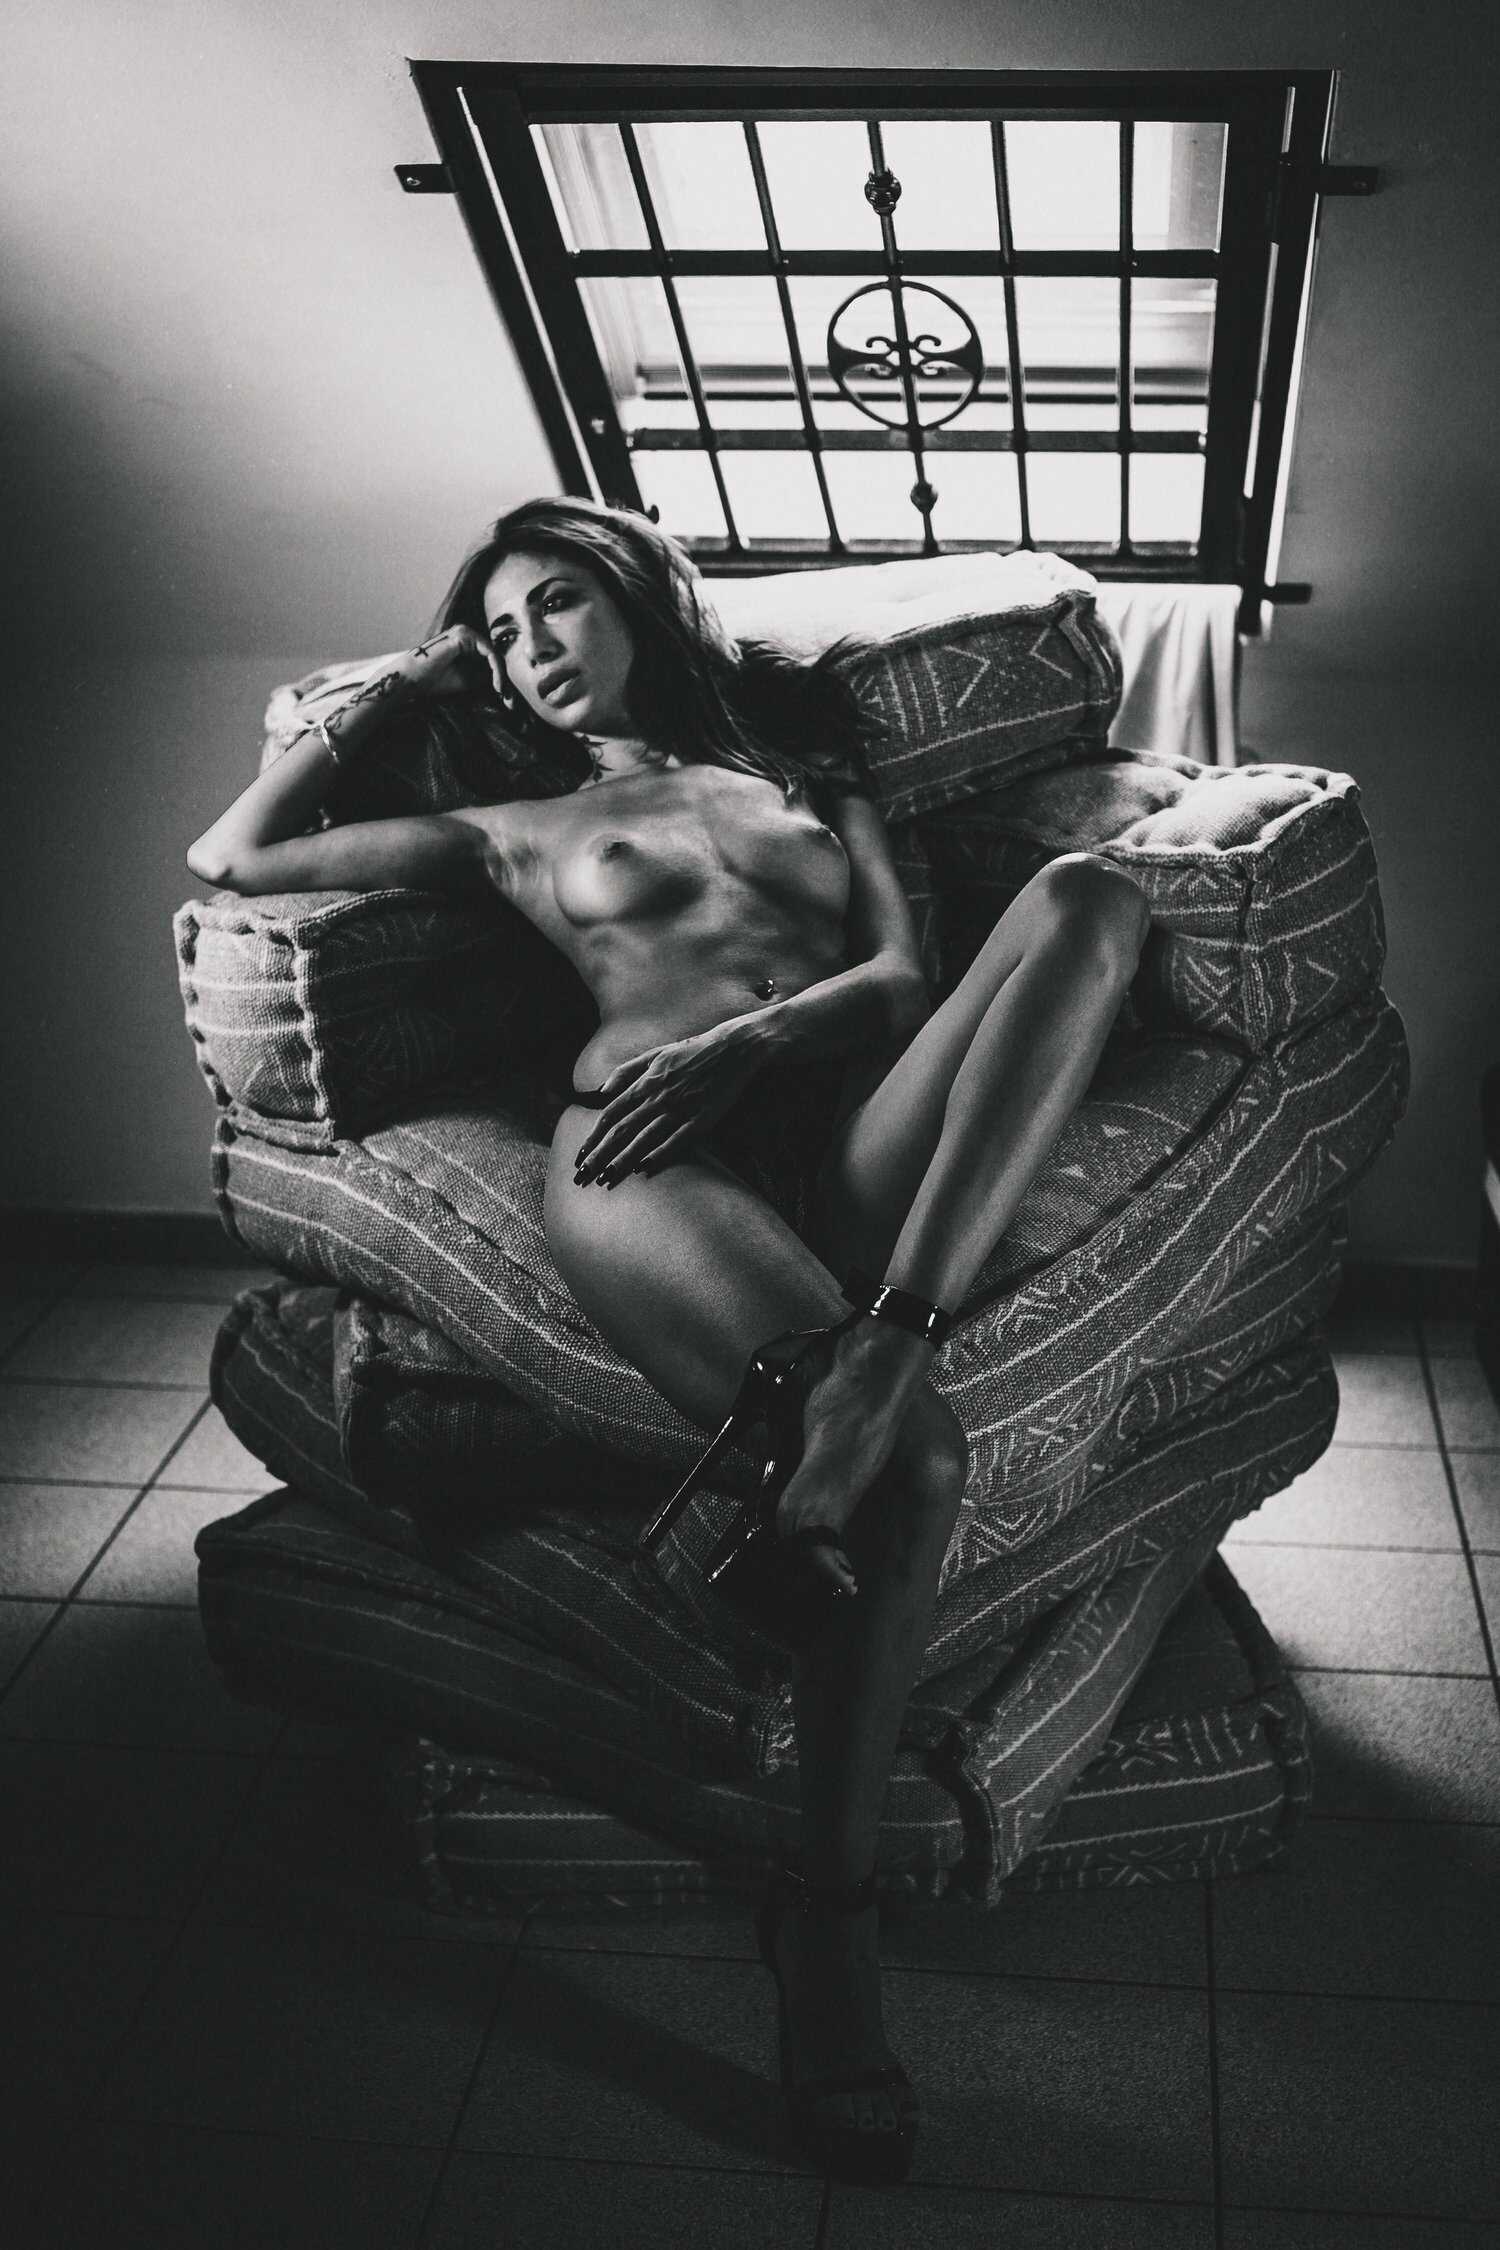 Η μουνάρα μοντέλο Francesca σε γυμνή φωτογράφηση